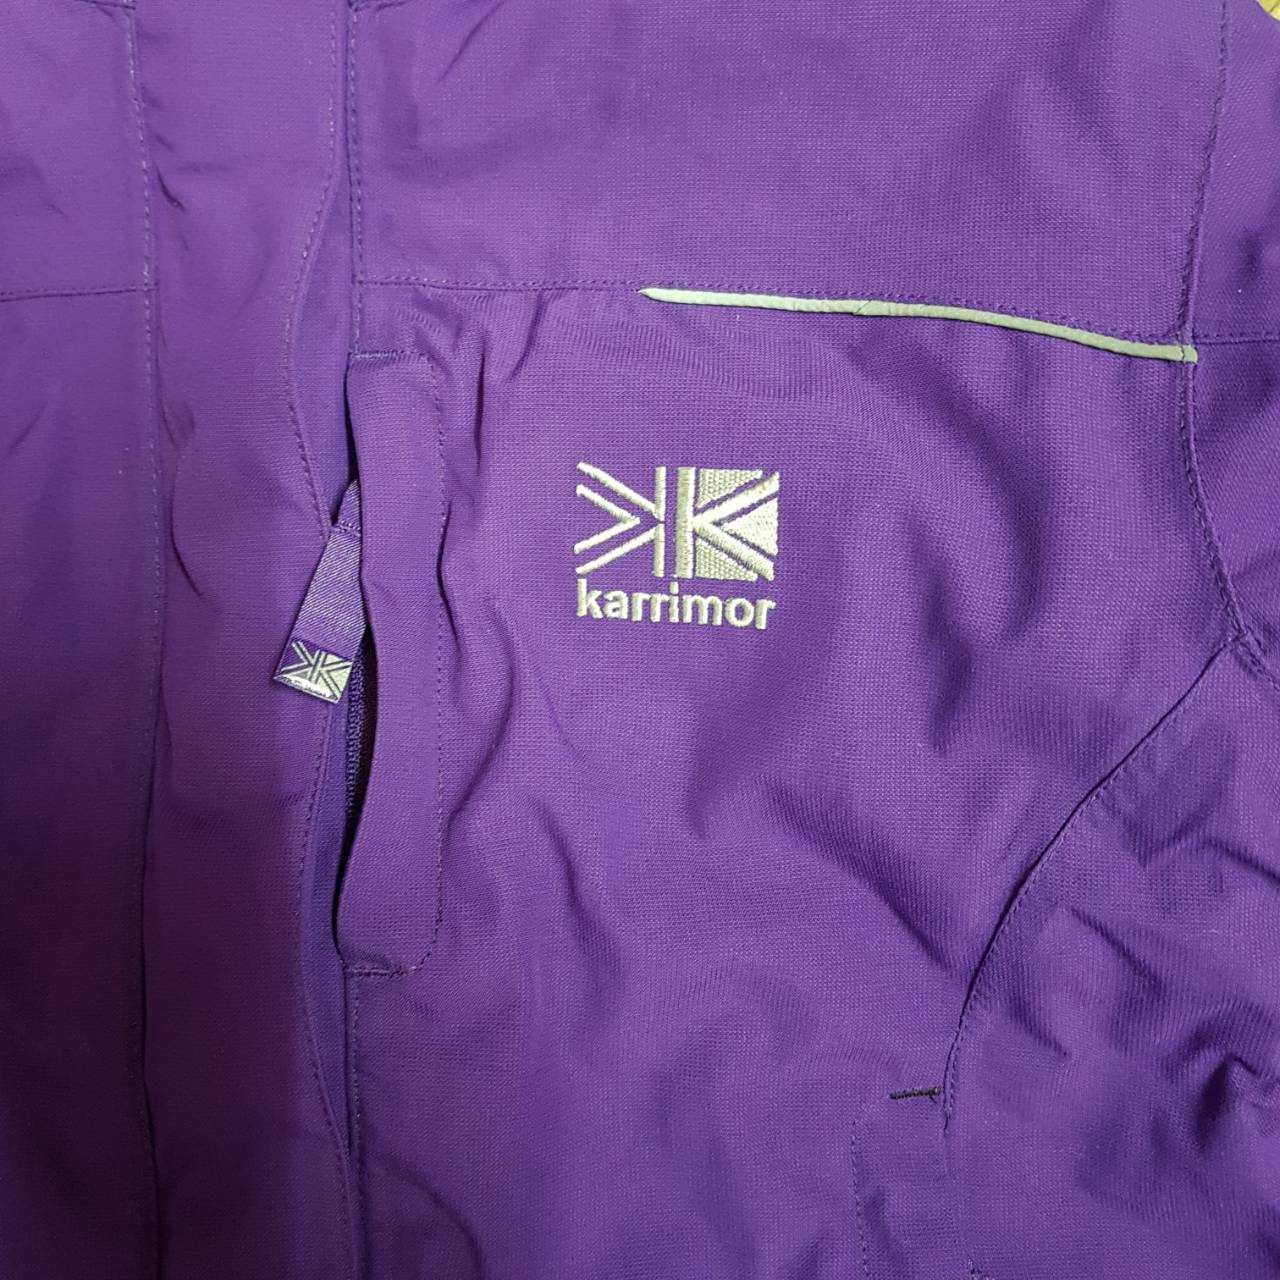 Непродуваемая и непромокаемая куртка Karrimor для девочки из Англии